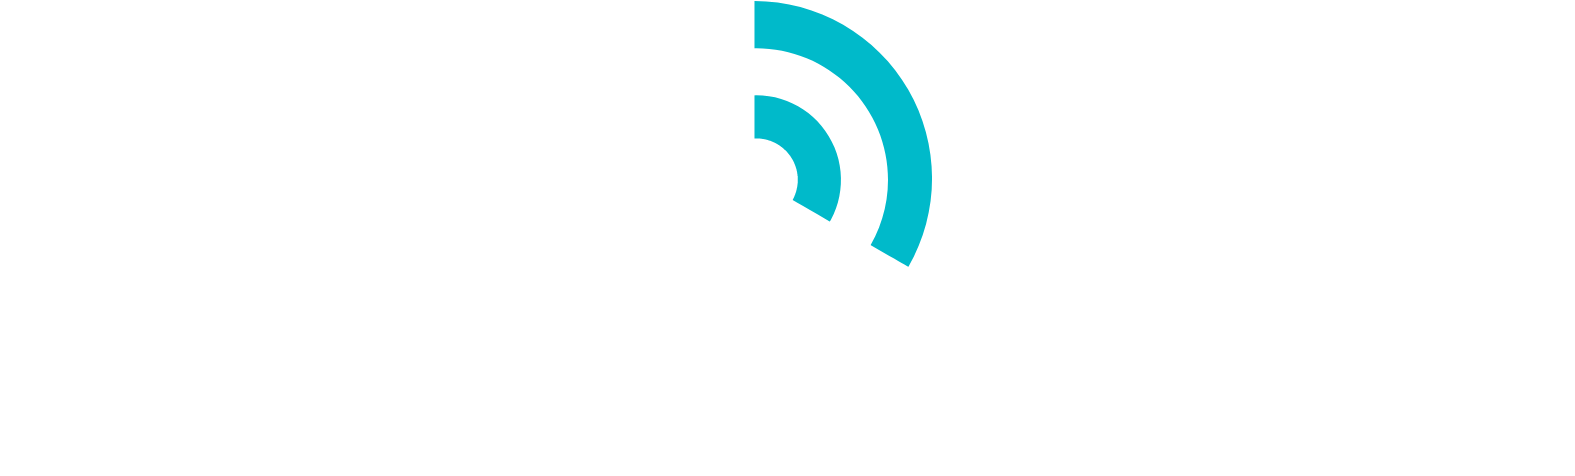 Innoviz logo large for dark backgrounds (transparent PNG)